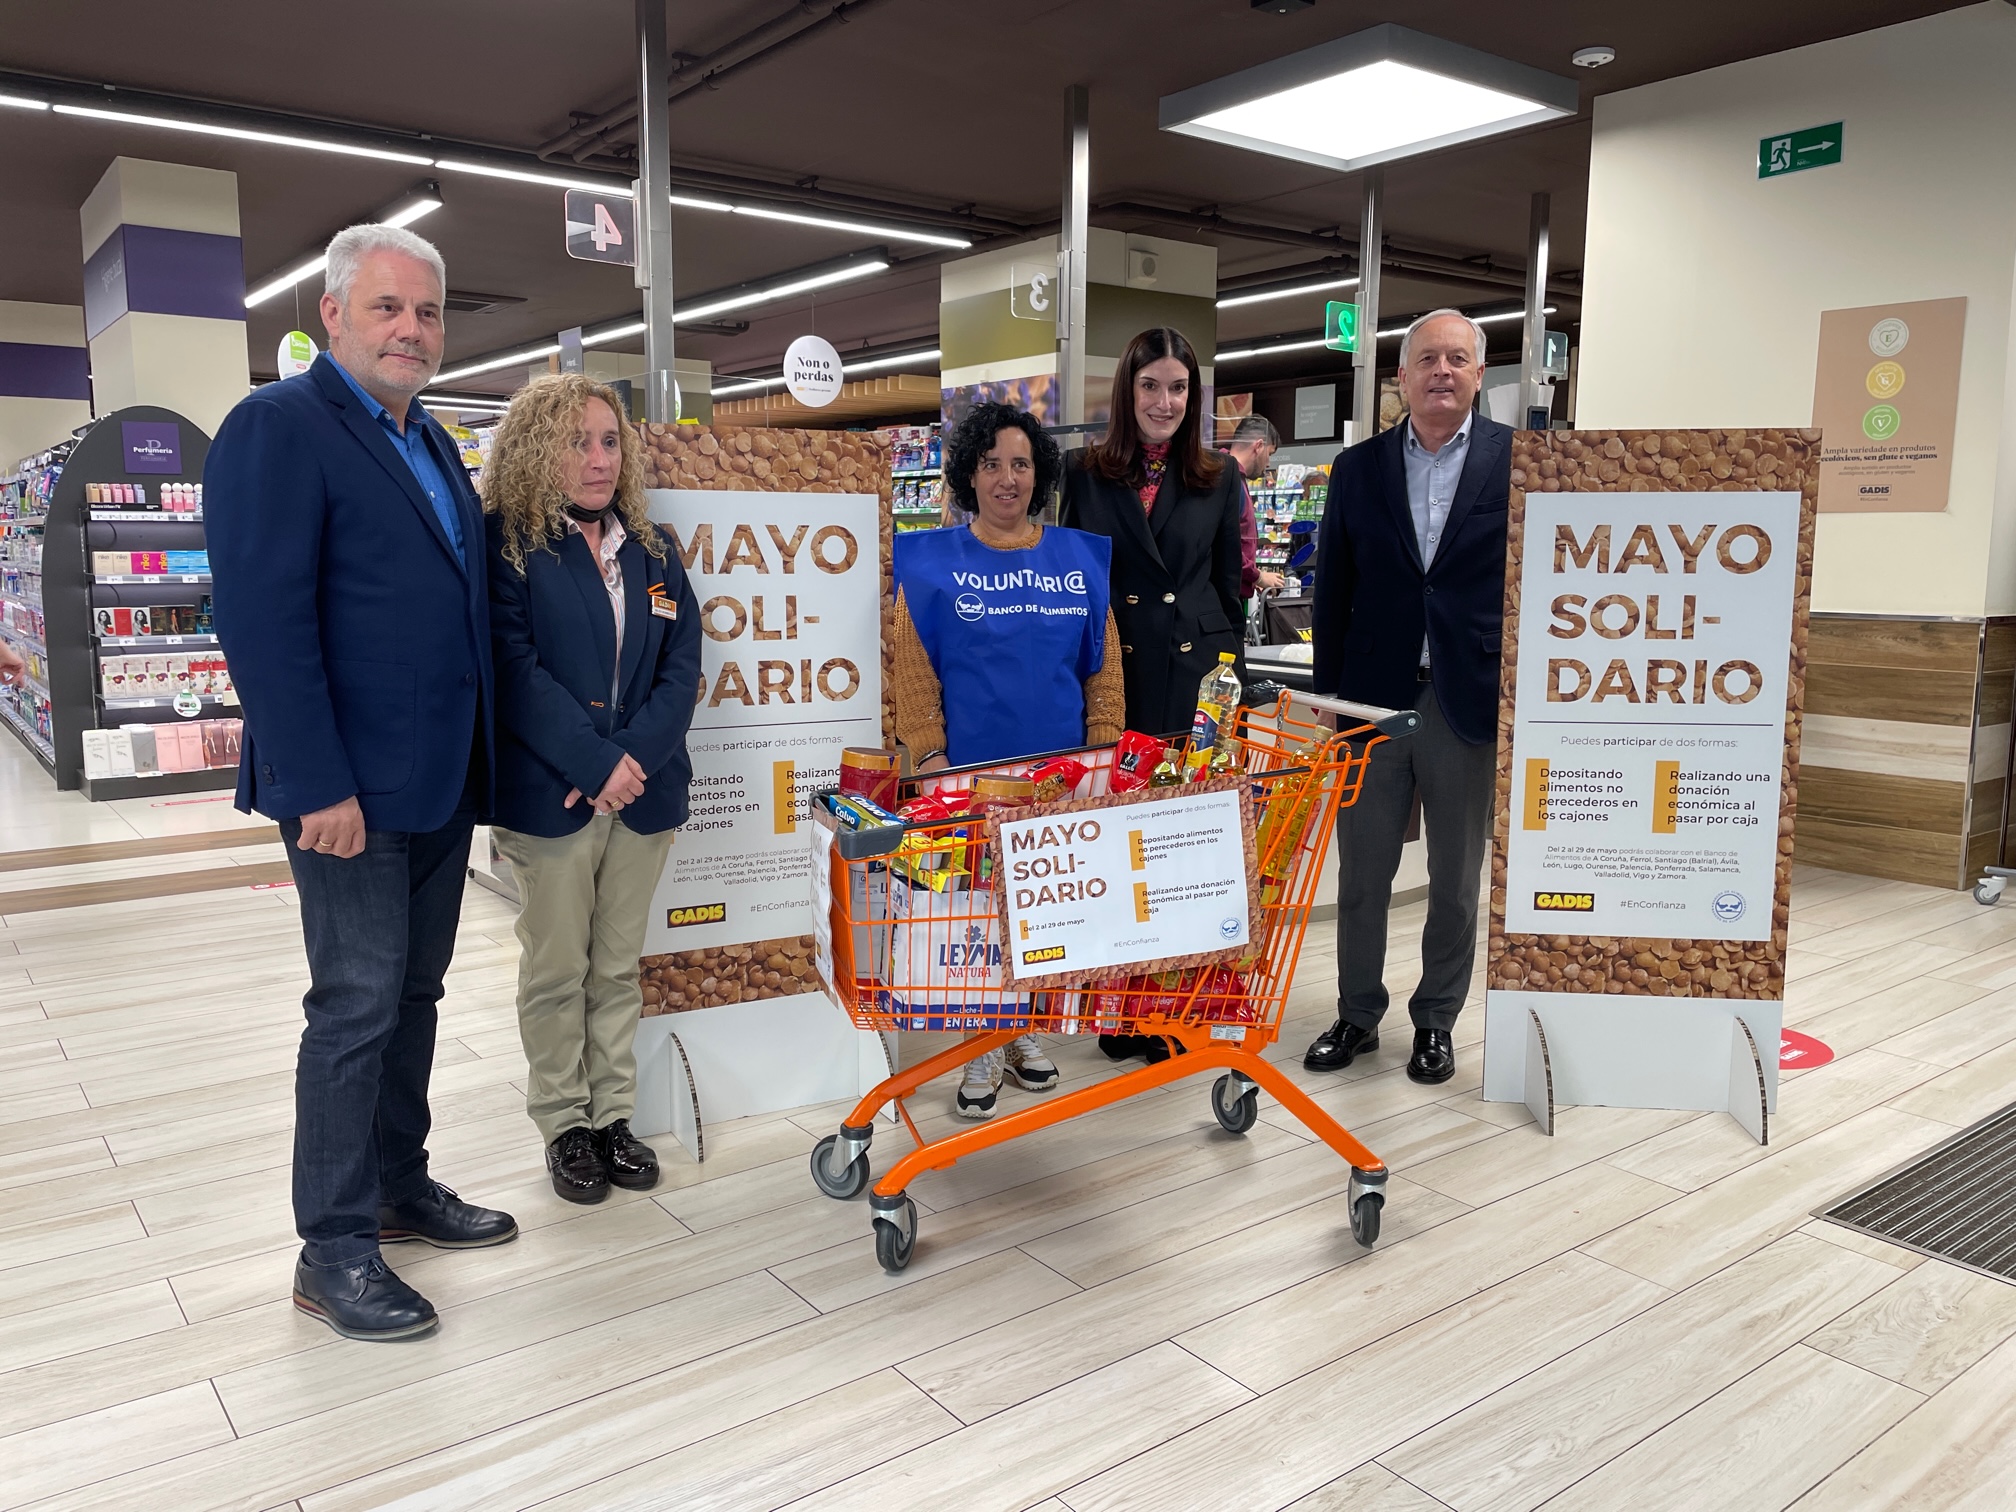 Llega una nueva ediciÃ³n de nuestro Mayo Solidario, la campaÃ±a de recogida de alimentos de nuestros supermercados